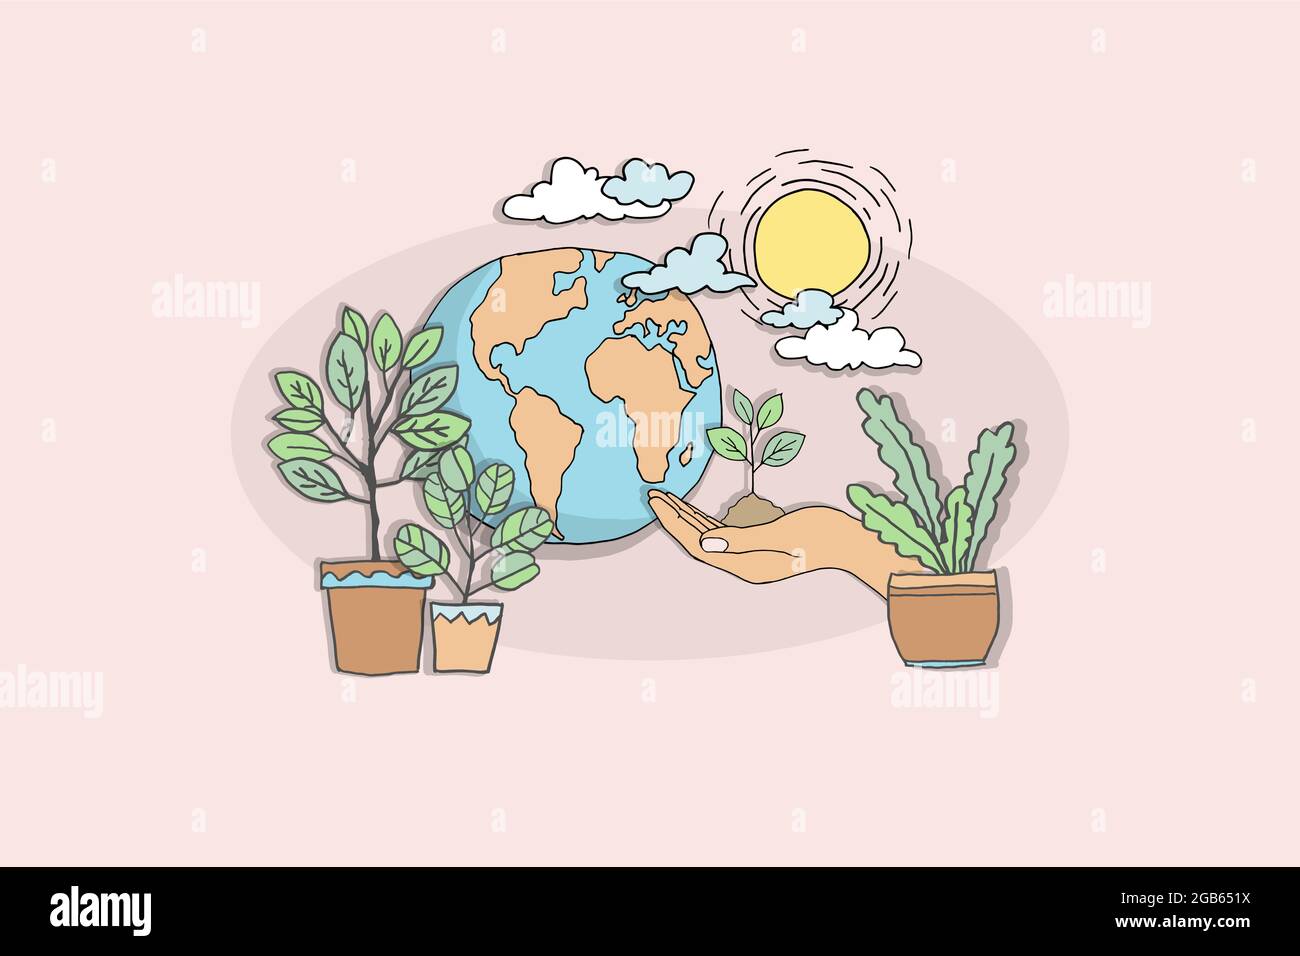 Eco Cartoon Planet Erde Hand kümmert Pflanze sprießen. Umweltsicherheit nachhaltige Technologie erneuerbare Energie. Naturschutz-Problempapier drawin Stock Vektor